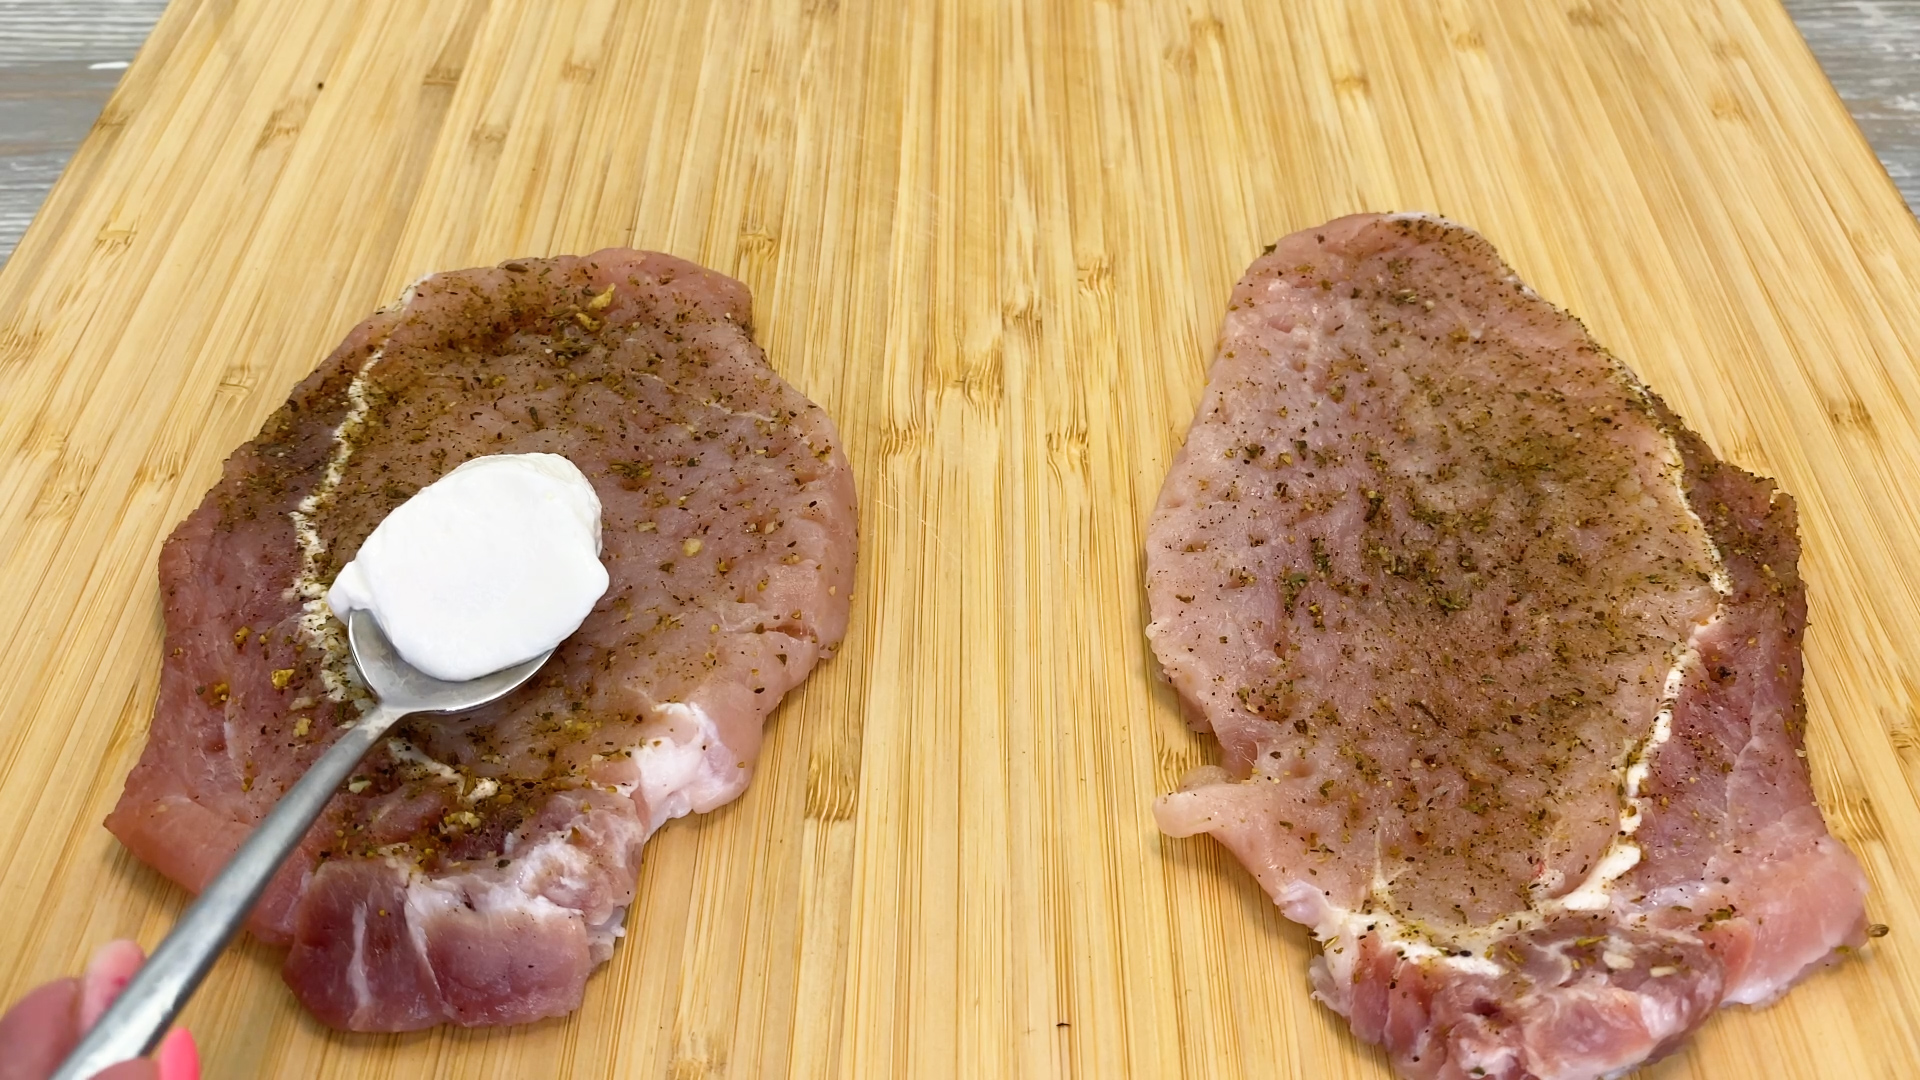 Мясо в сливочном масле рецепт. Мясо со шляпкой. Масло свинина. Дома на столе мясо замаринованное 4 штуки Голиня.